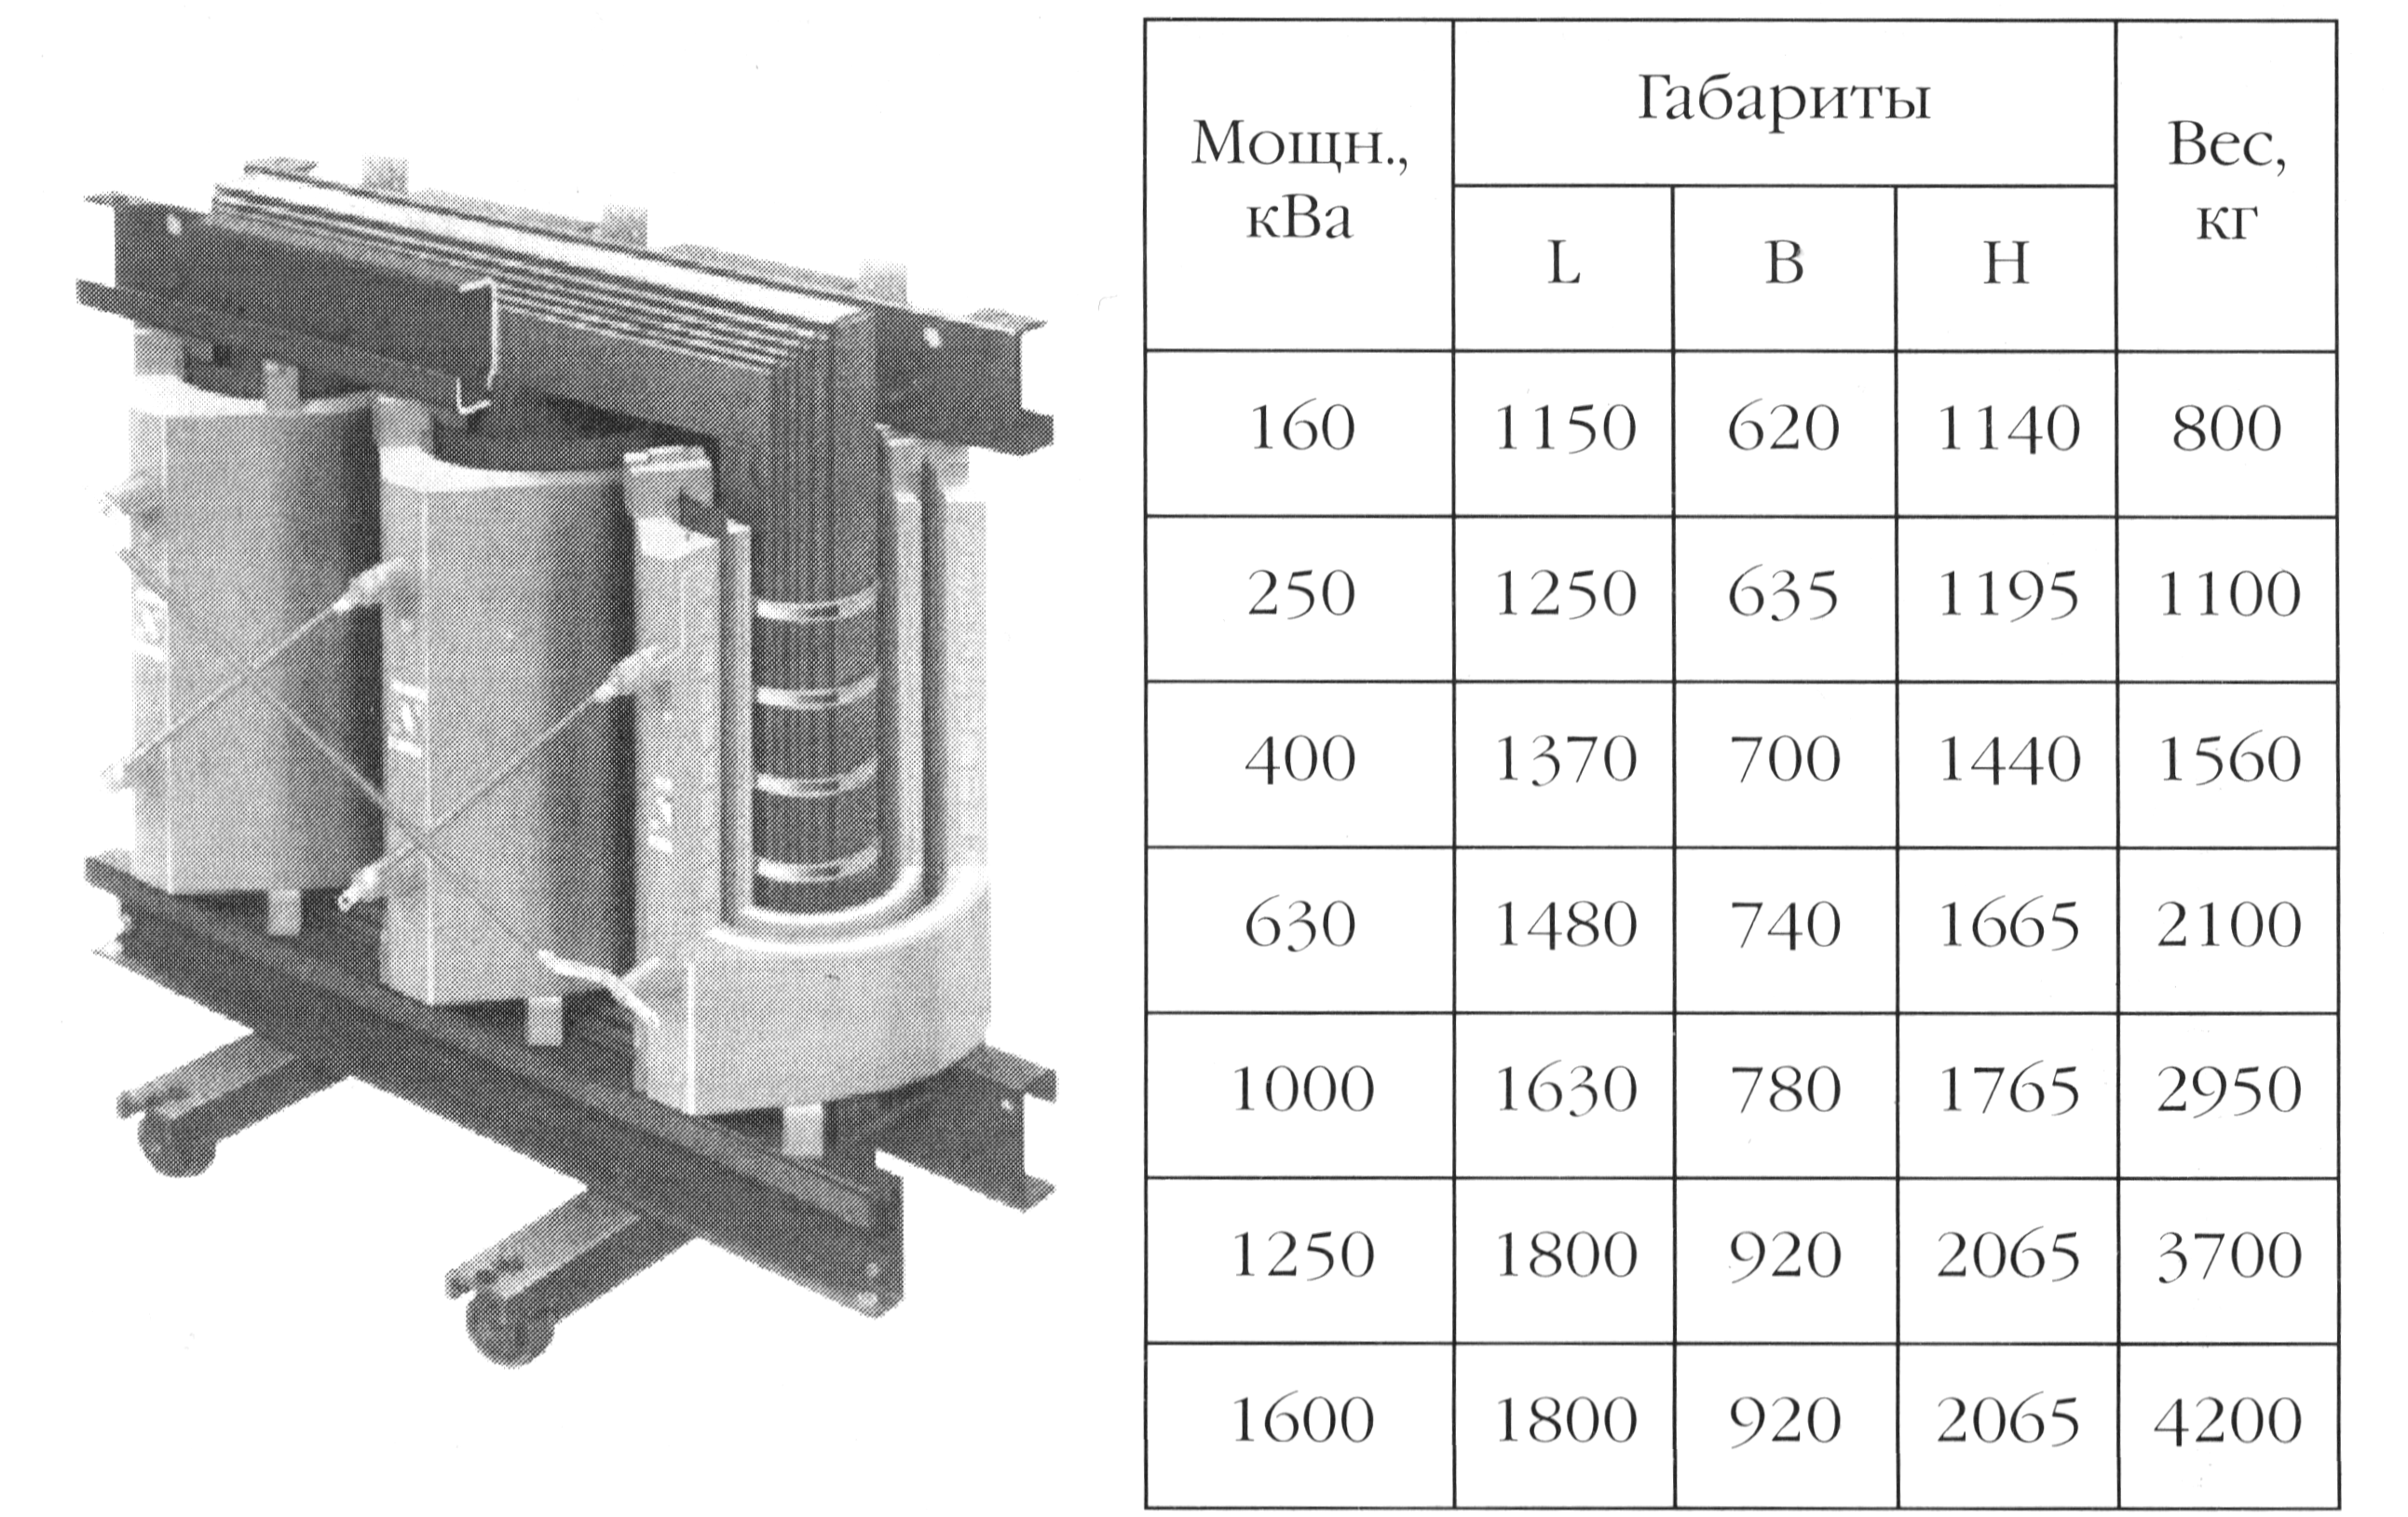 Габариты и вес трансформатора BEZ с литой изоляцией (сухого)